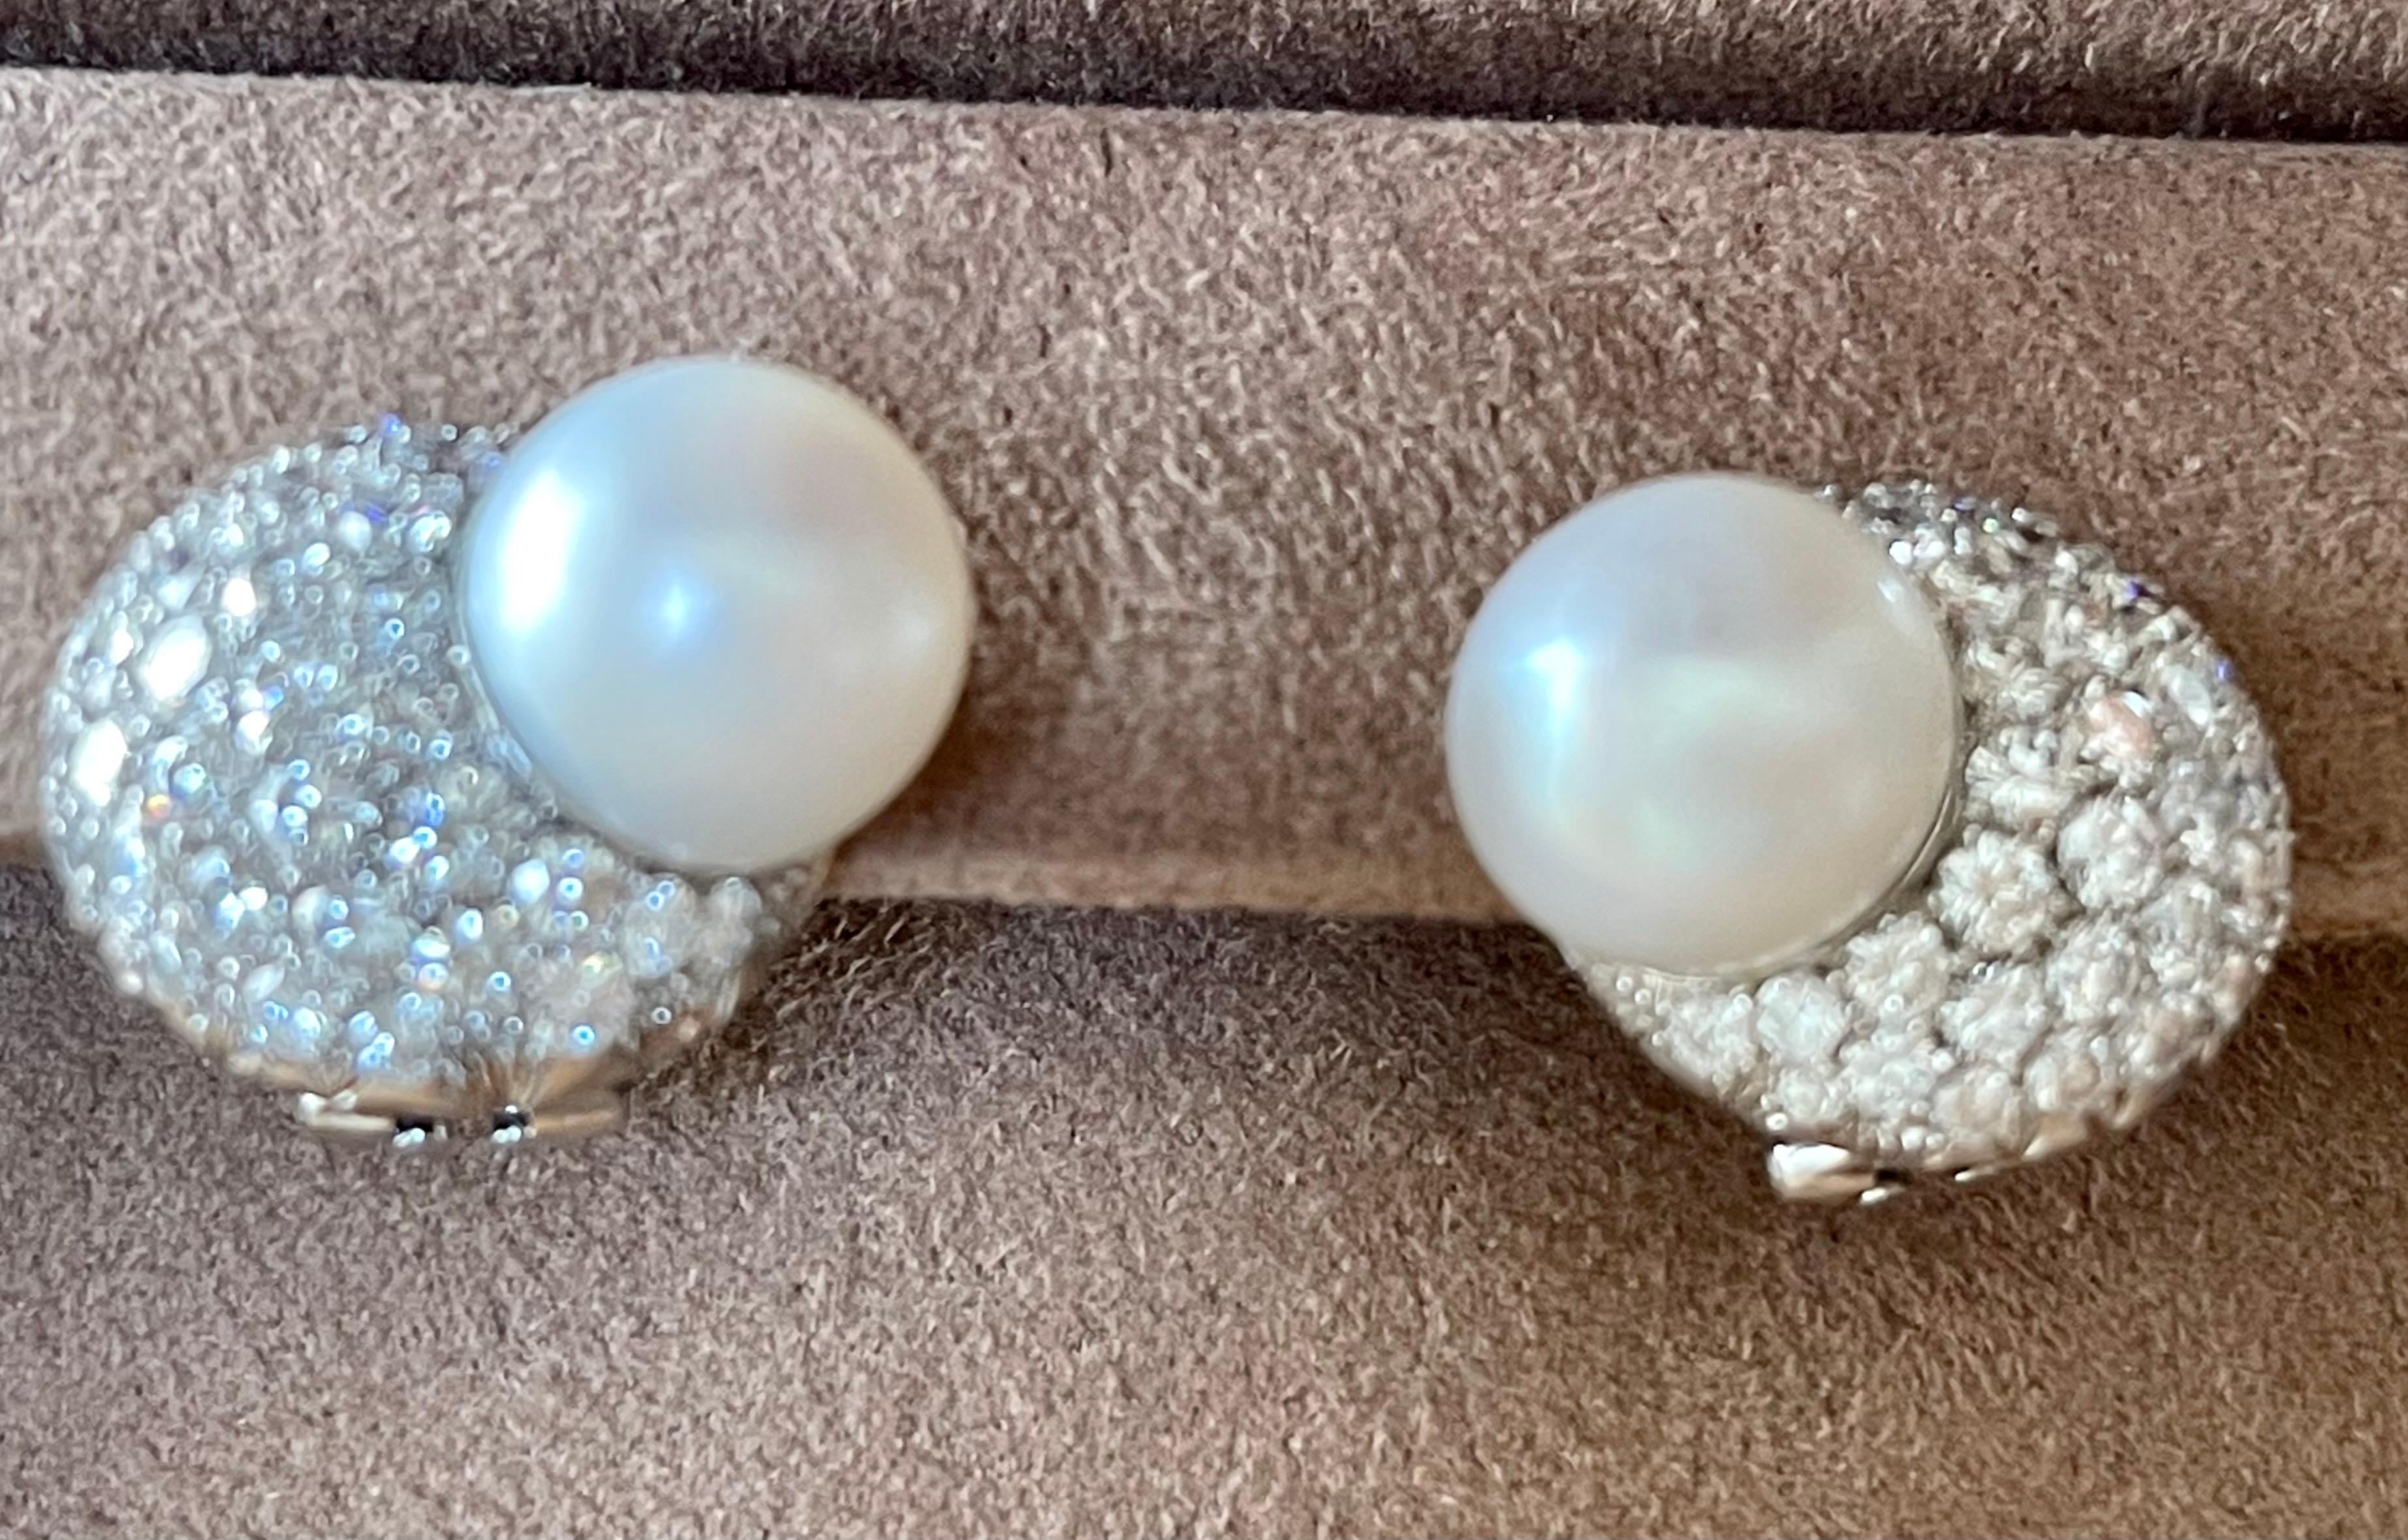 white south sea pearl earrings